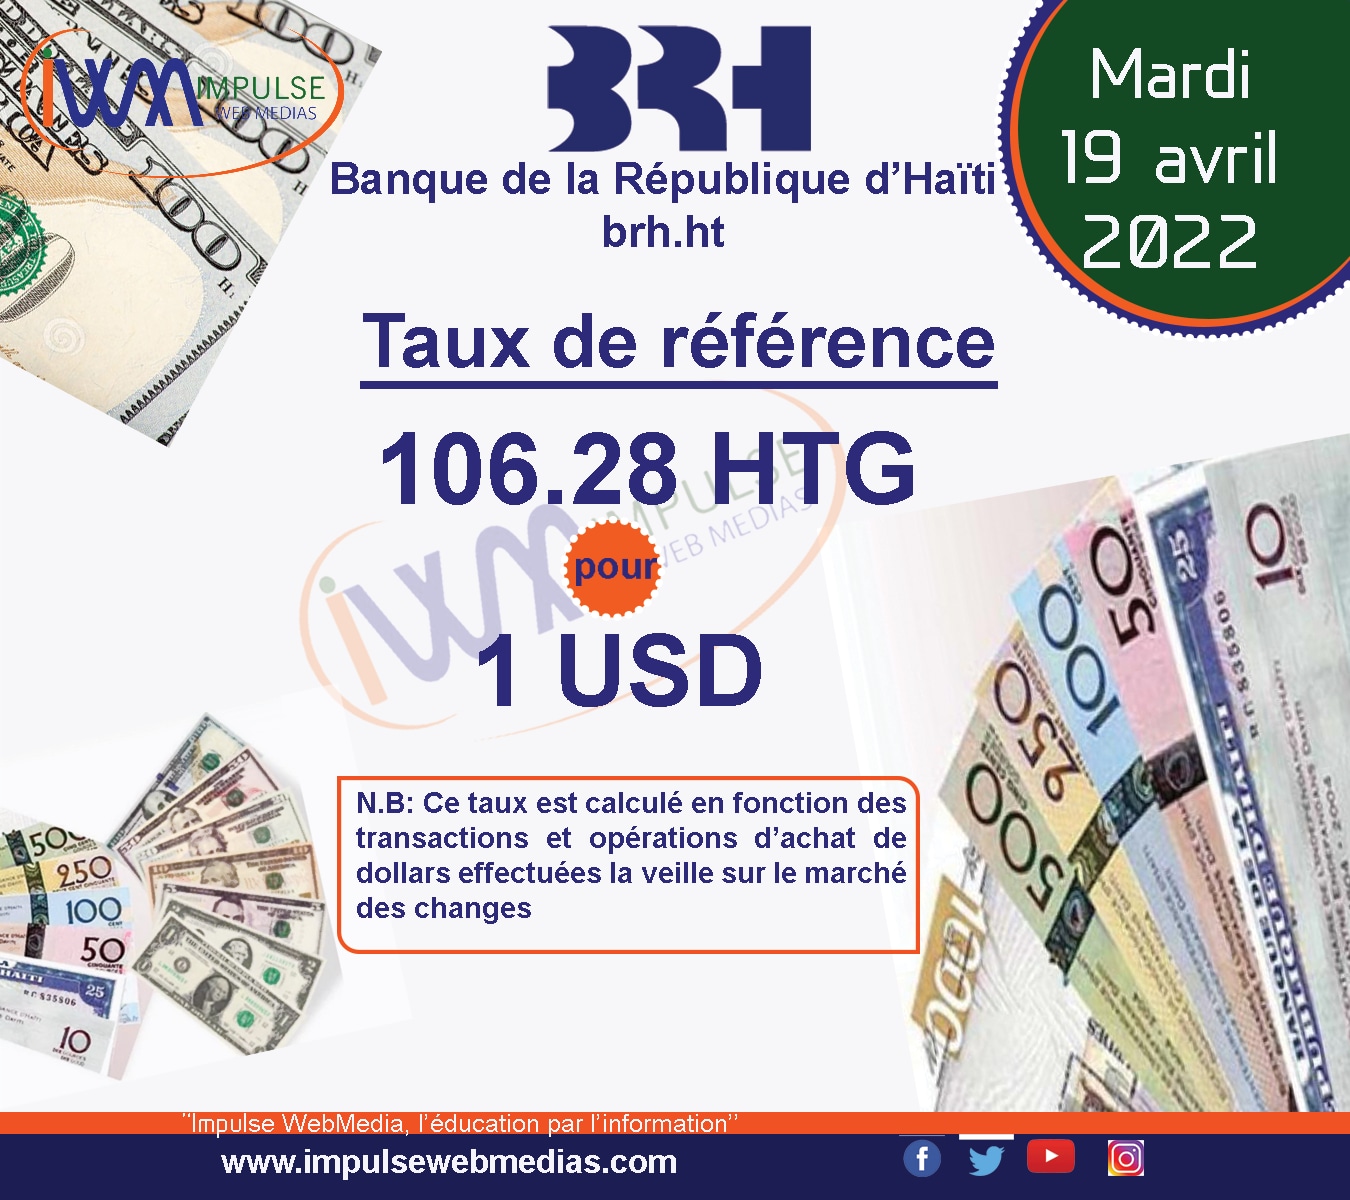 Haïti-Économie : Le taux de référence de la BRH pour ce mardi 19 avril post thumbnail image